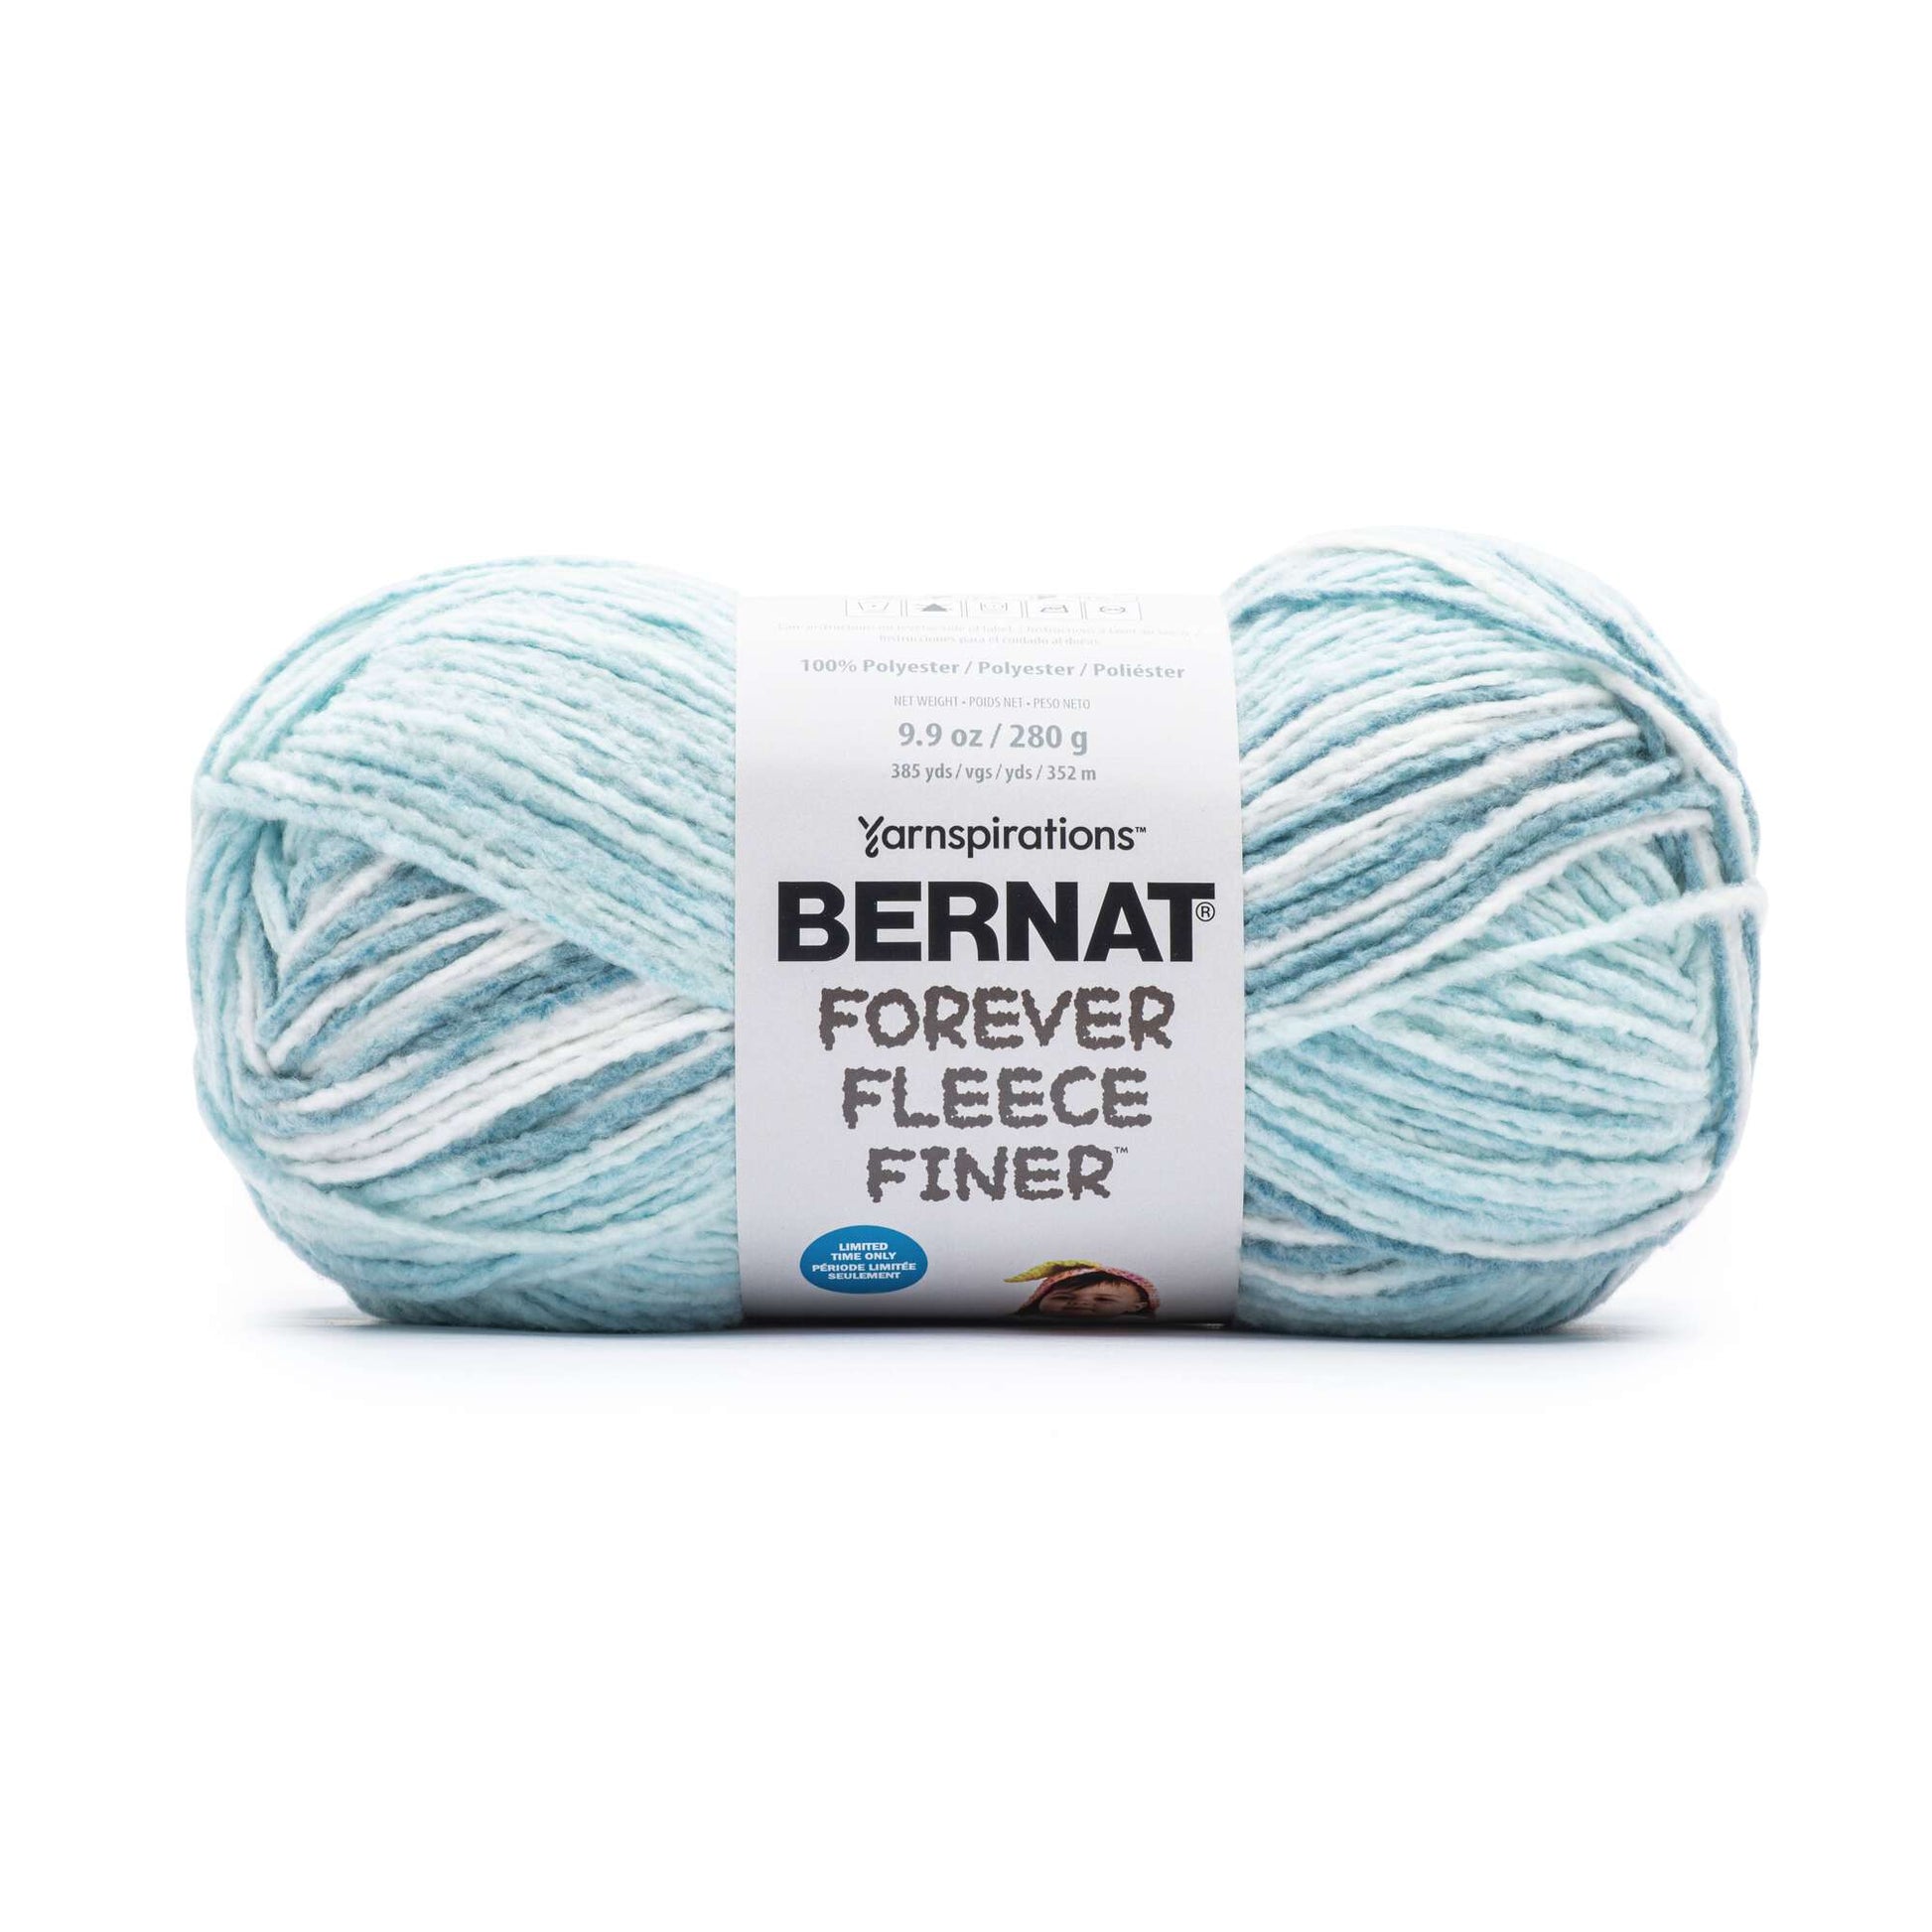 Bernat Forever Fleece Finer Yarn - Discontinued Shades Splish Splash